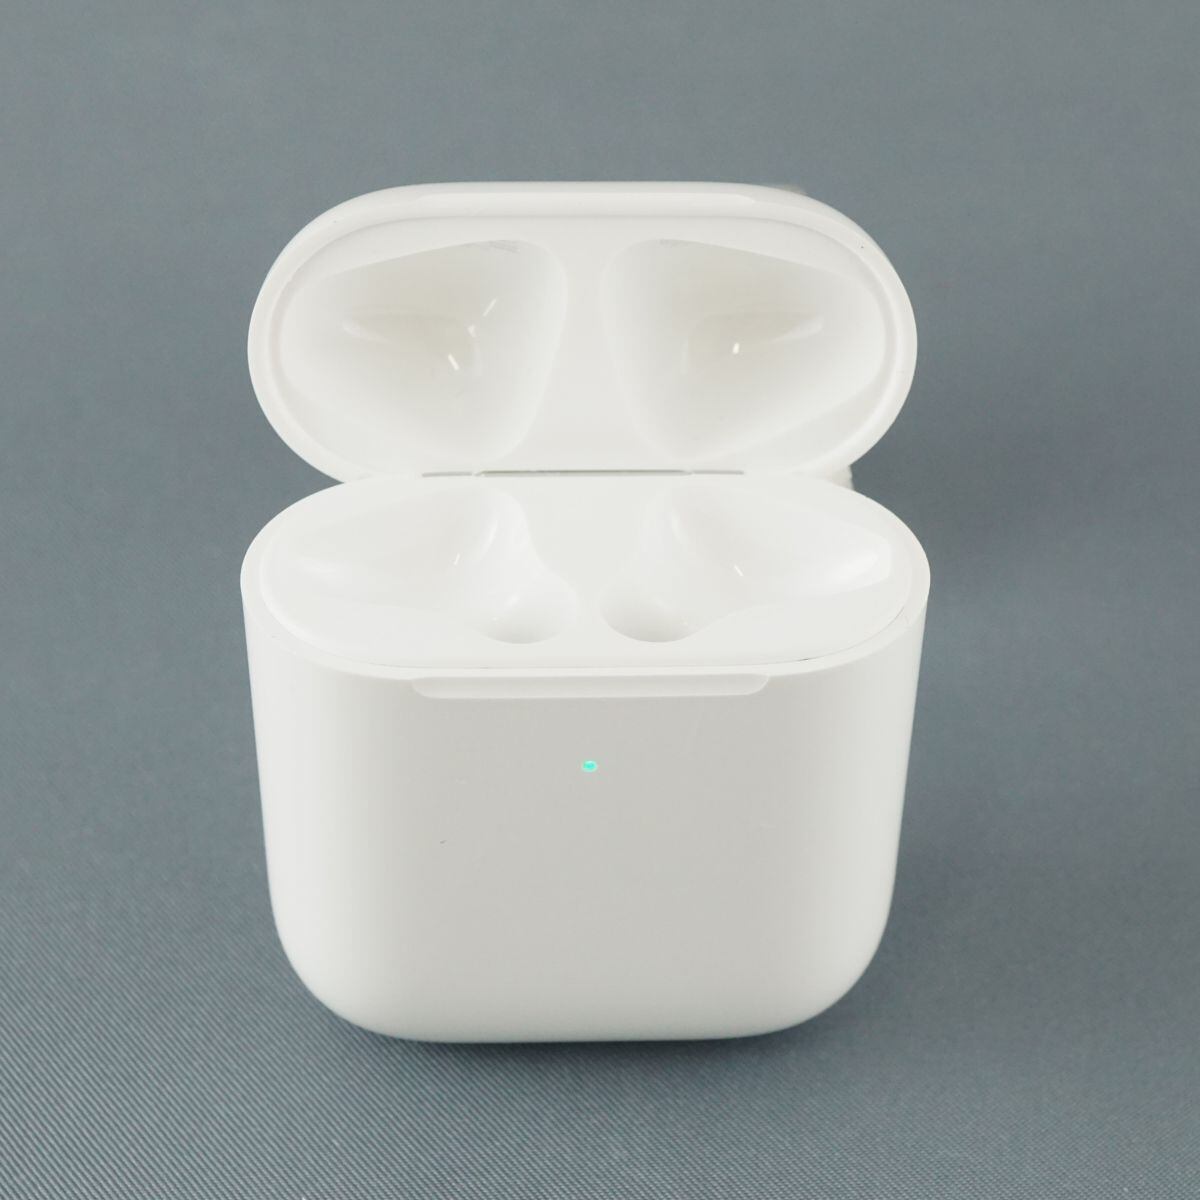 美品 Apple AirPods with Charging Case 第2世代